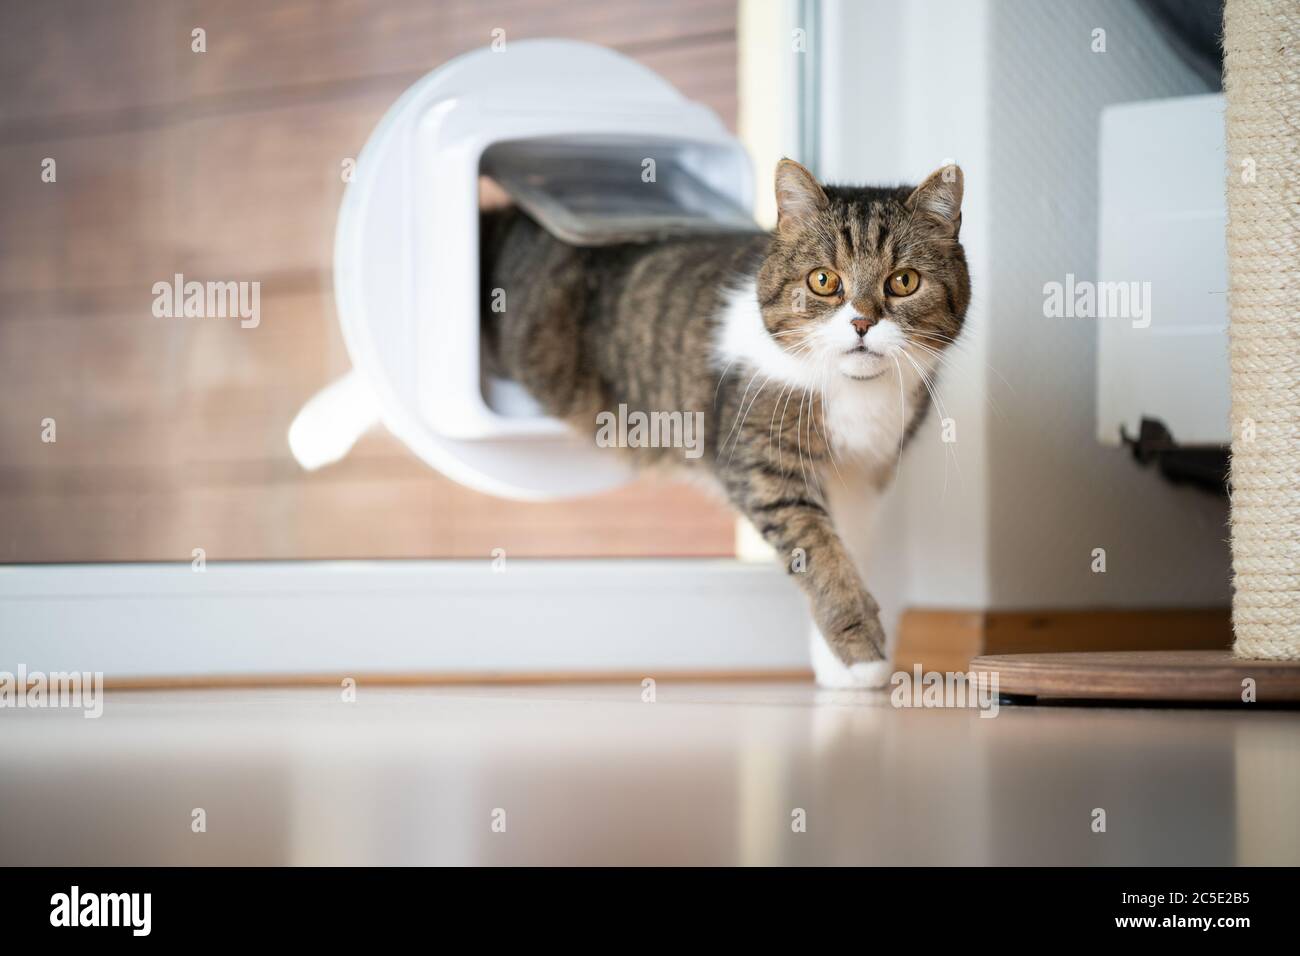 Tabby weiße britische Kurzhaarkatze kommt nach Hause, betritt den Raum durch Katzenklappe im Fenster und schaut auf die Kamera Stockfoto